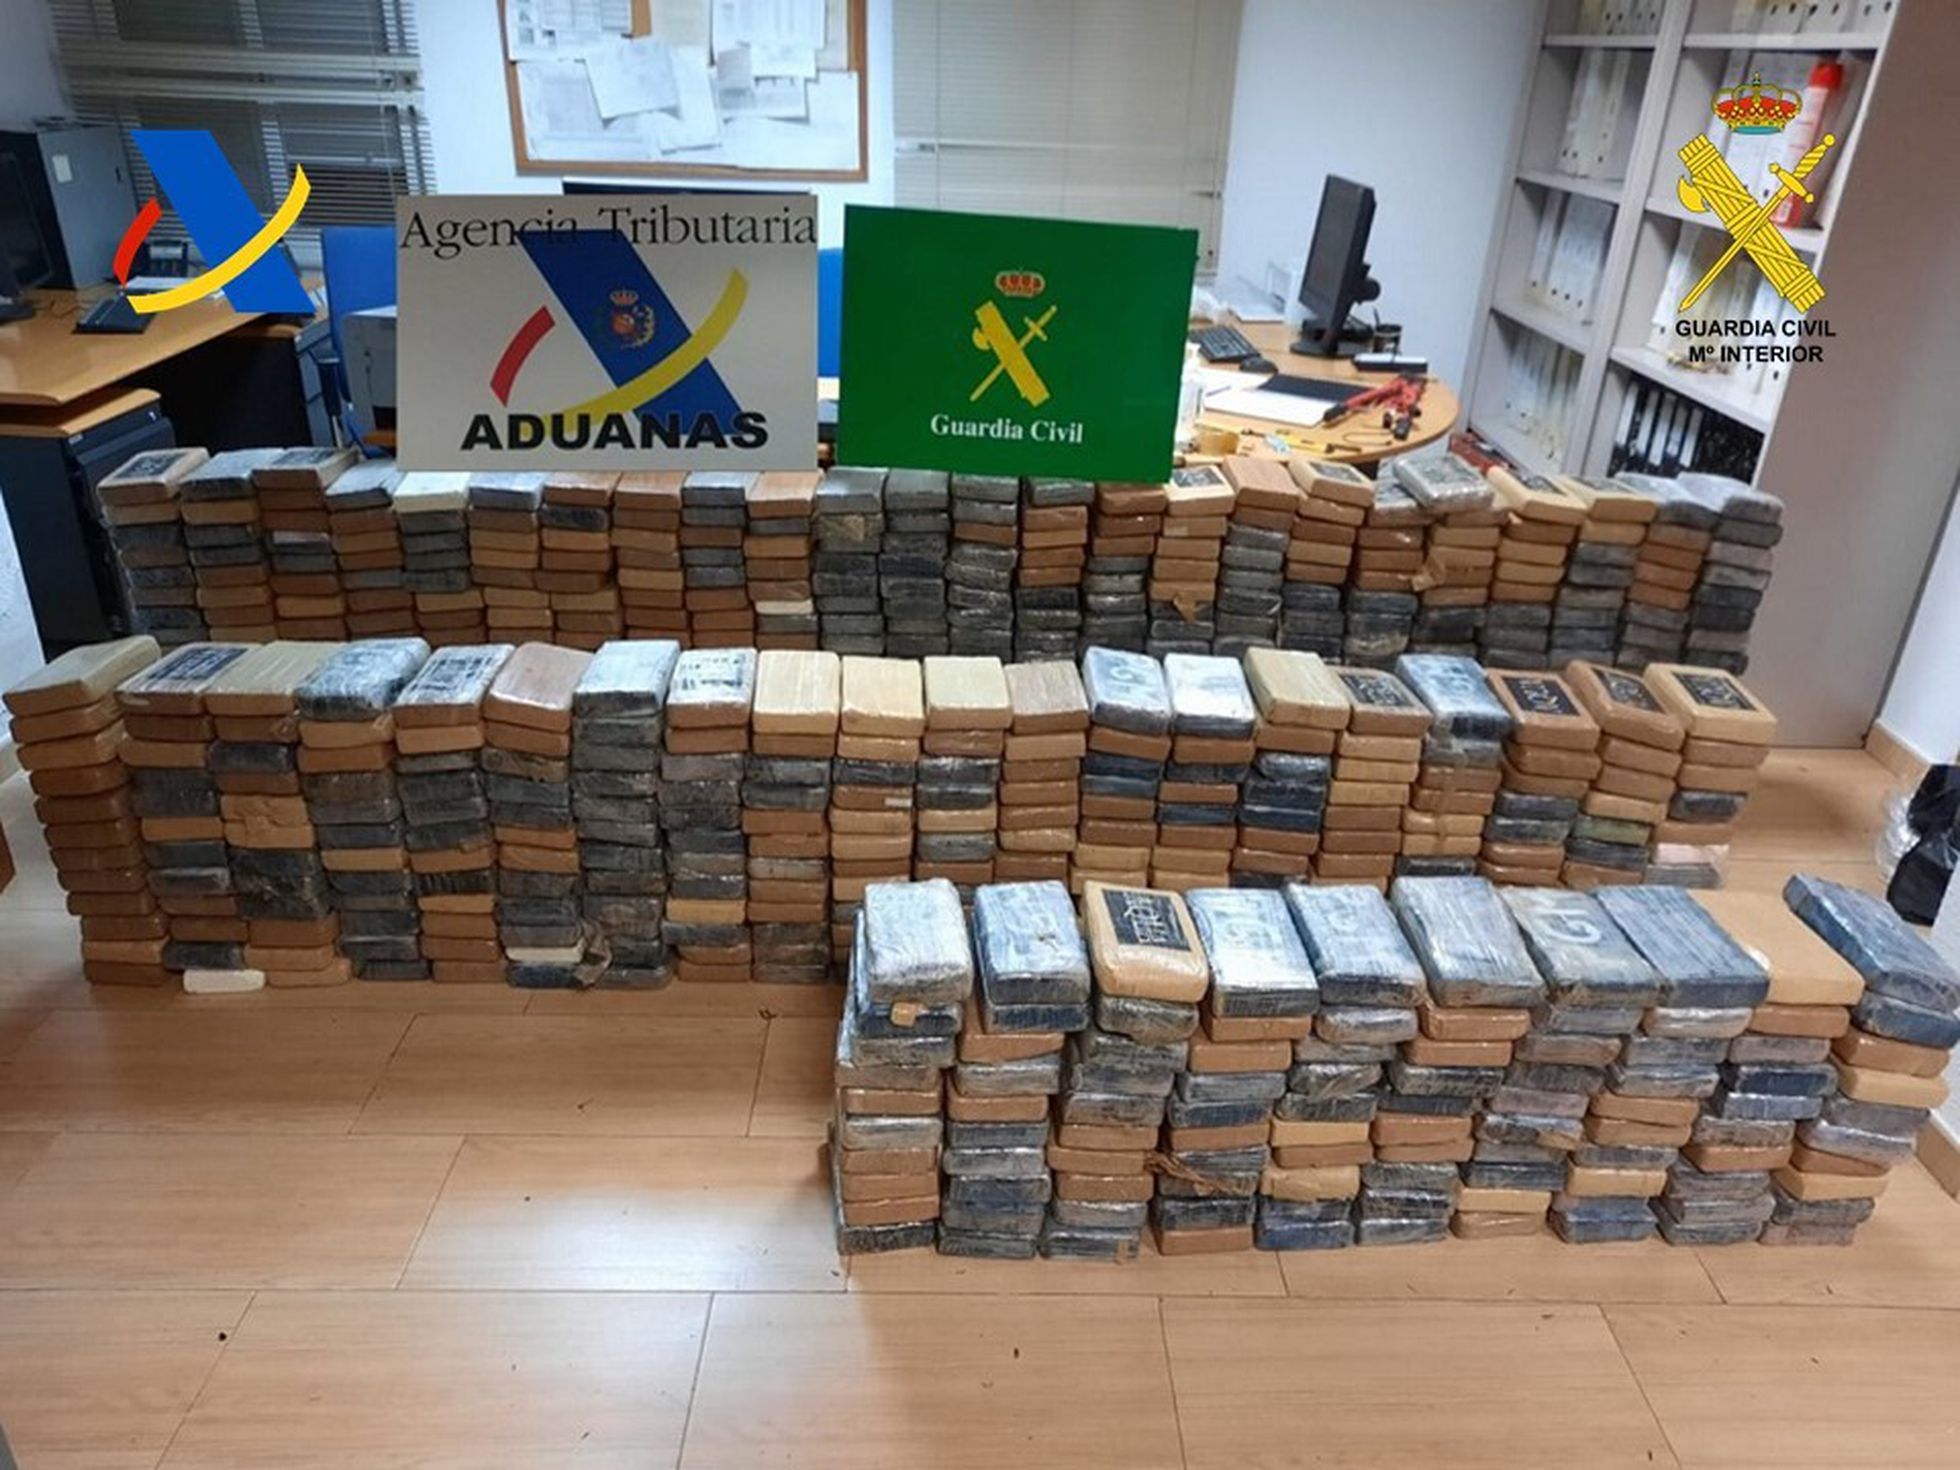 Incautan en España 700 kilos de cocaína en contenedor procedente de El Salvador